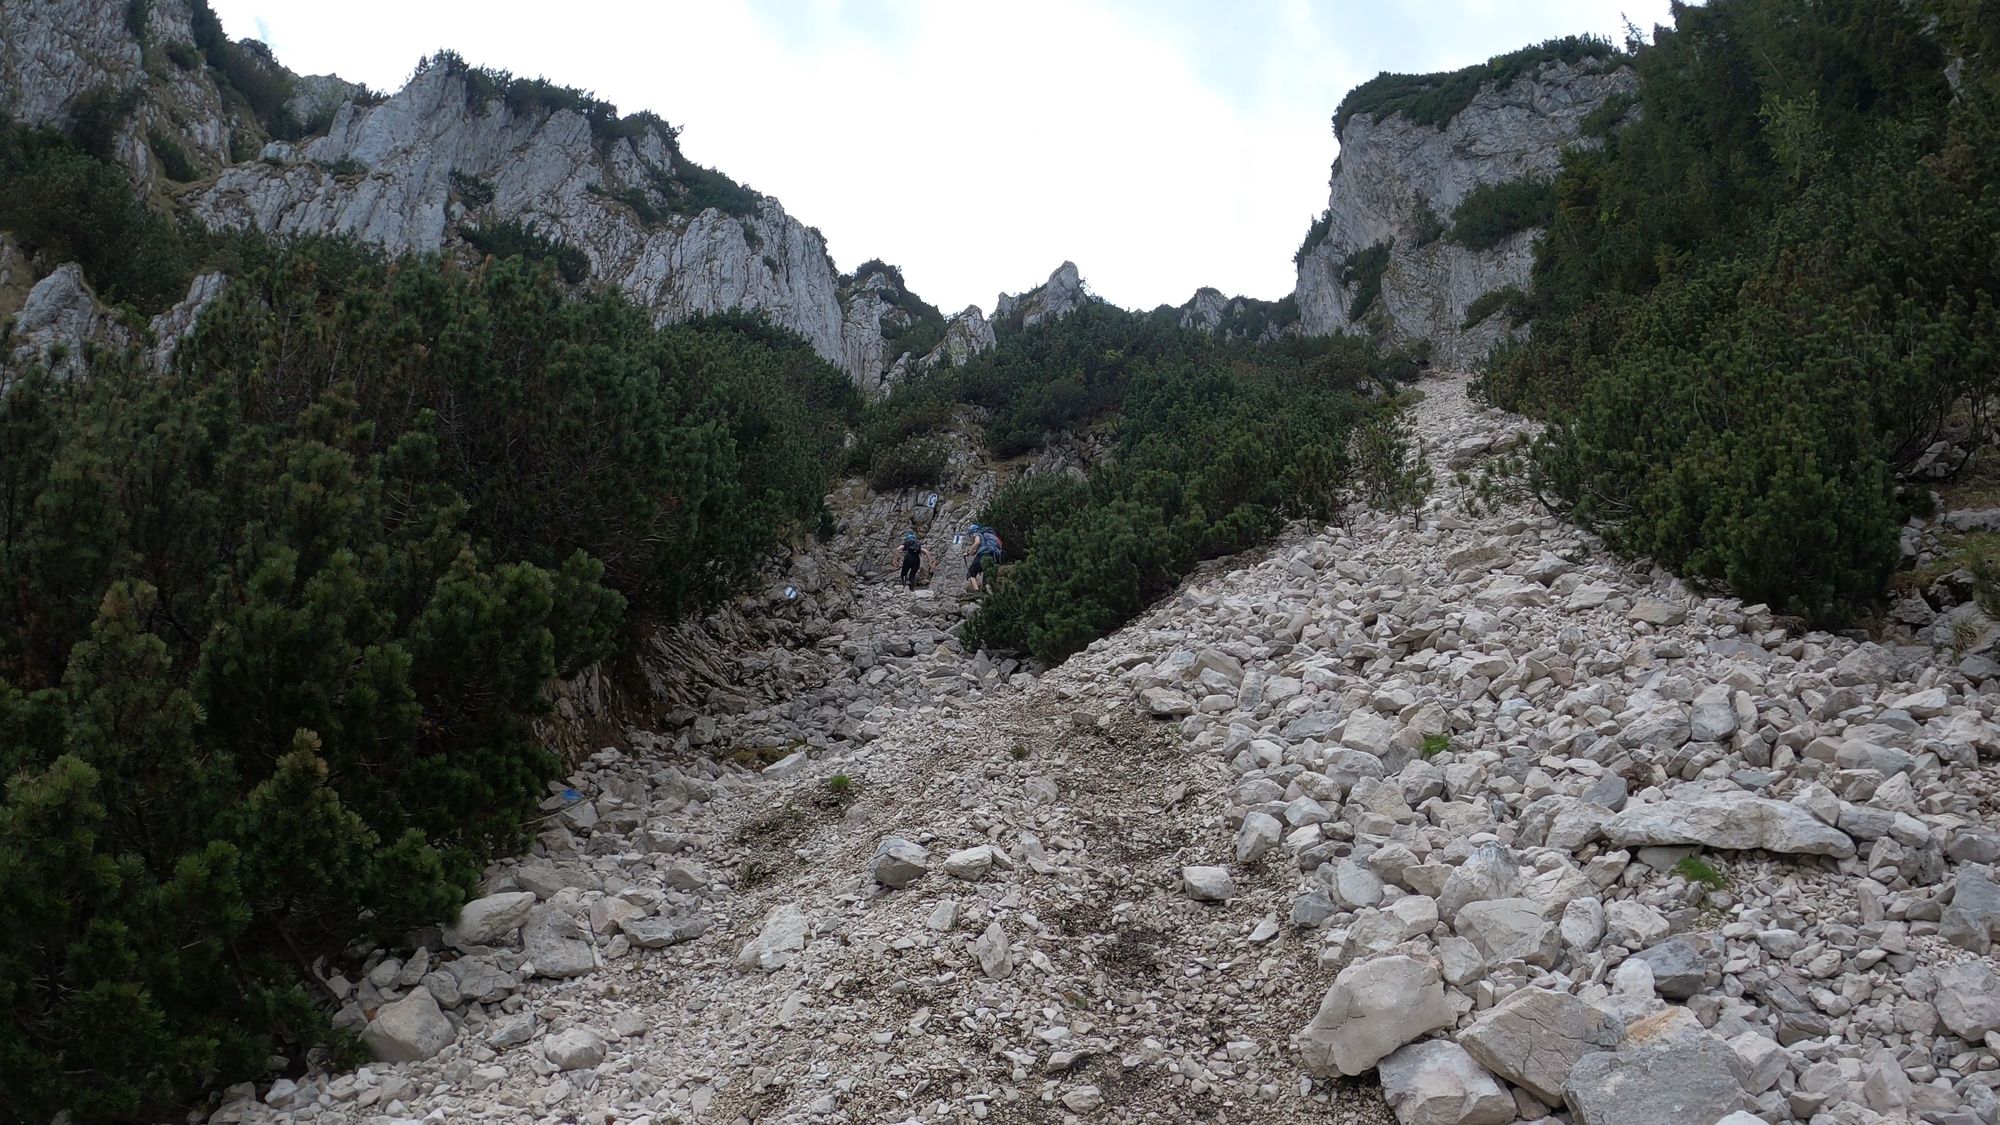 Brâna Caprelor - Brâul Ciorânga. Piatra Craiului, difficult hike